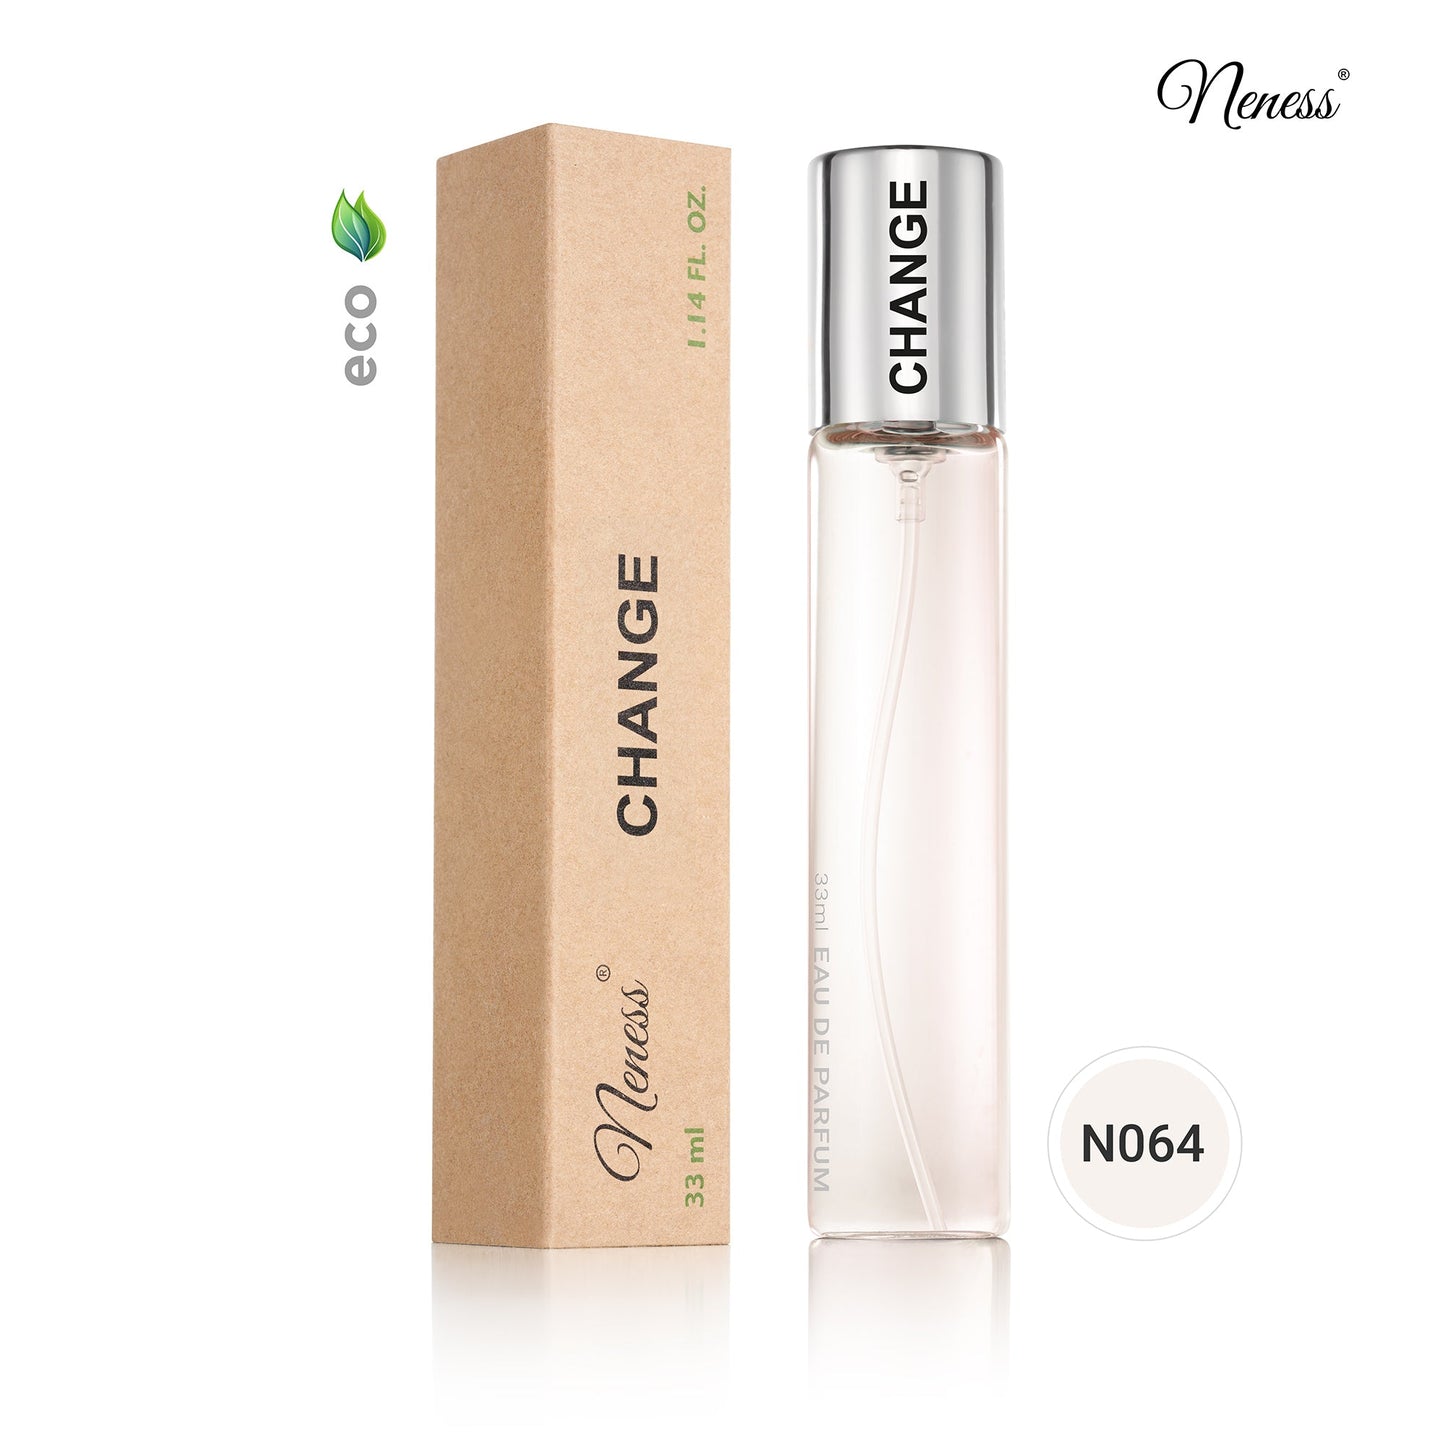 N064. Neness Change - 33 ml - Parfum voor vrouwen